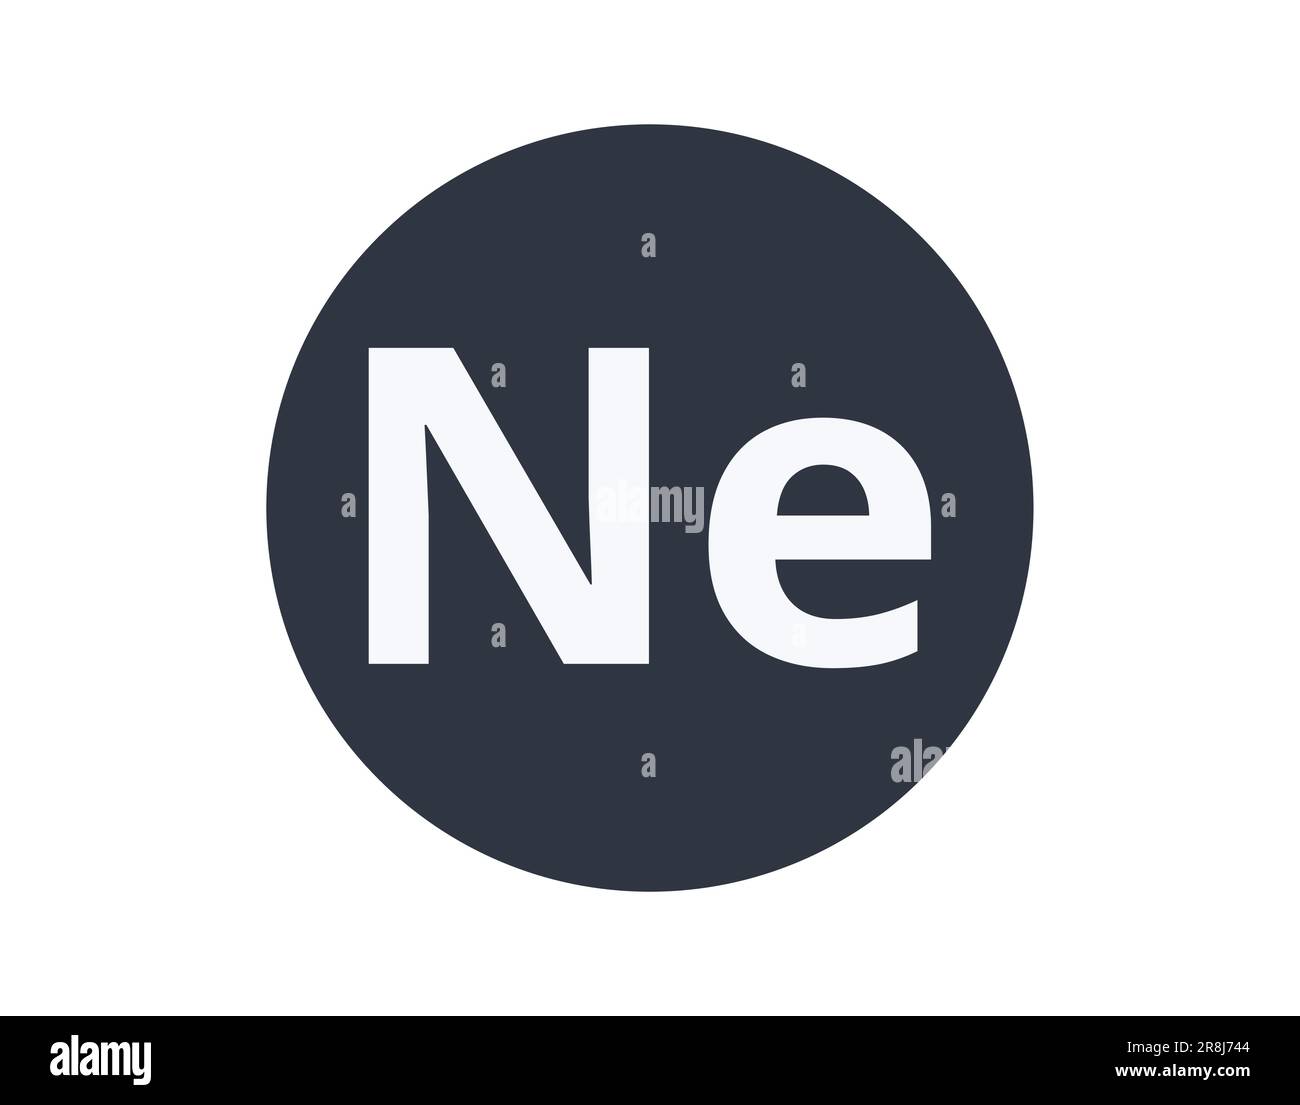 Elemento chimico al neon isolato in un cerchio. Illustrazione Vettoriale